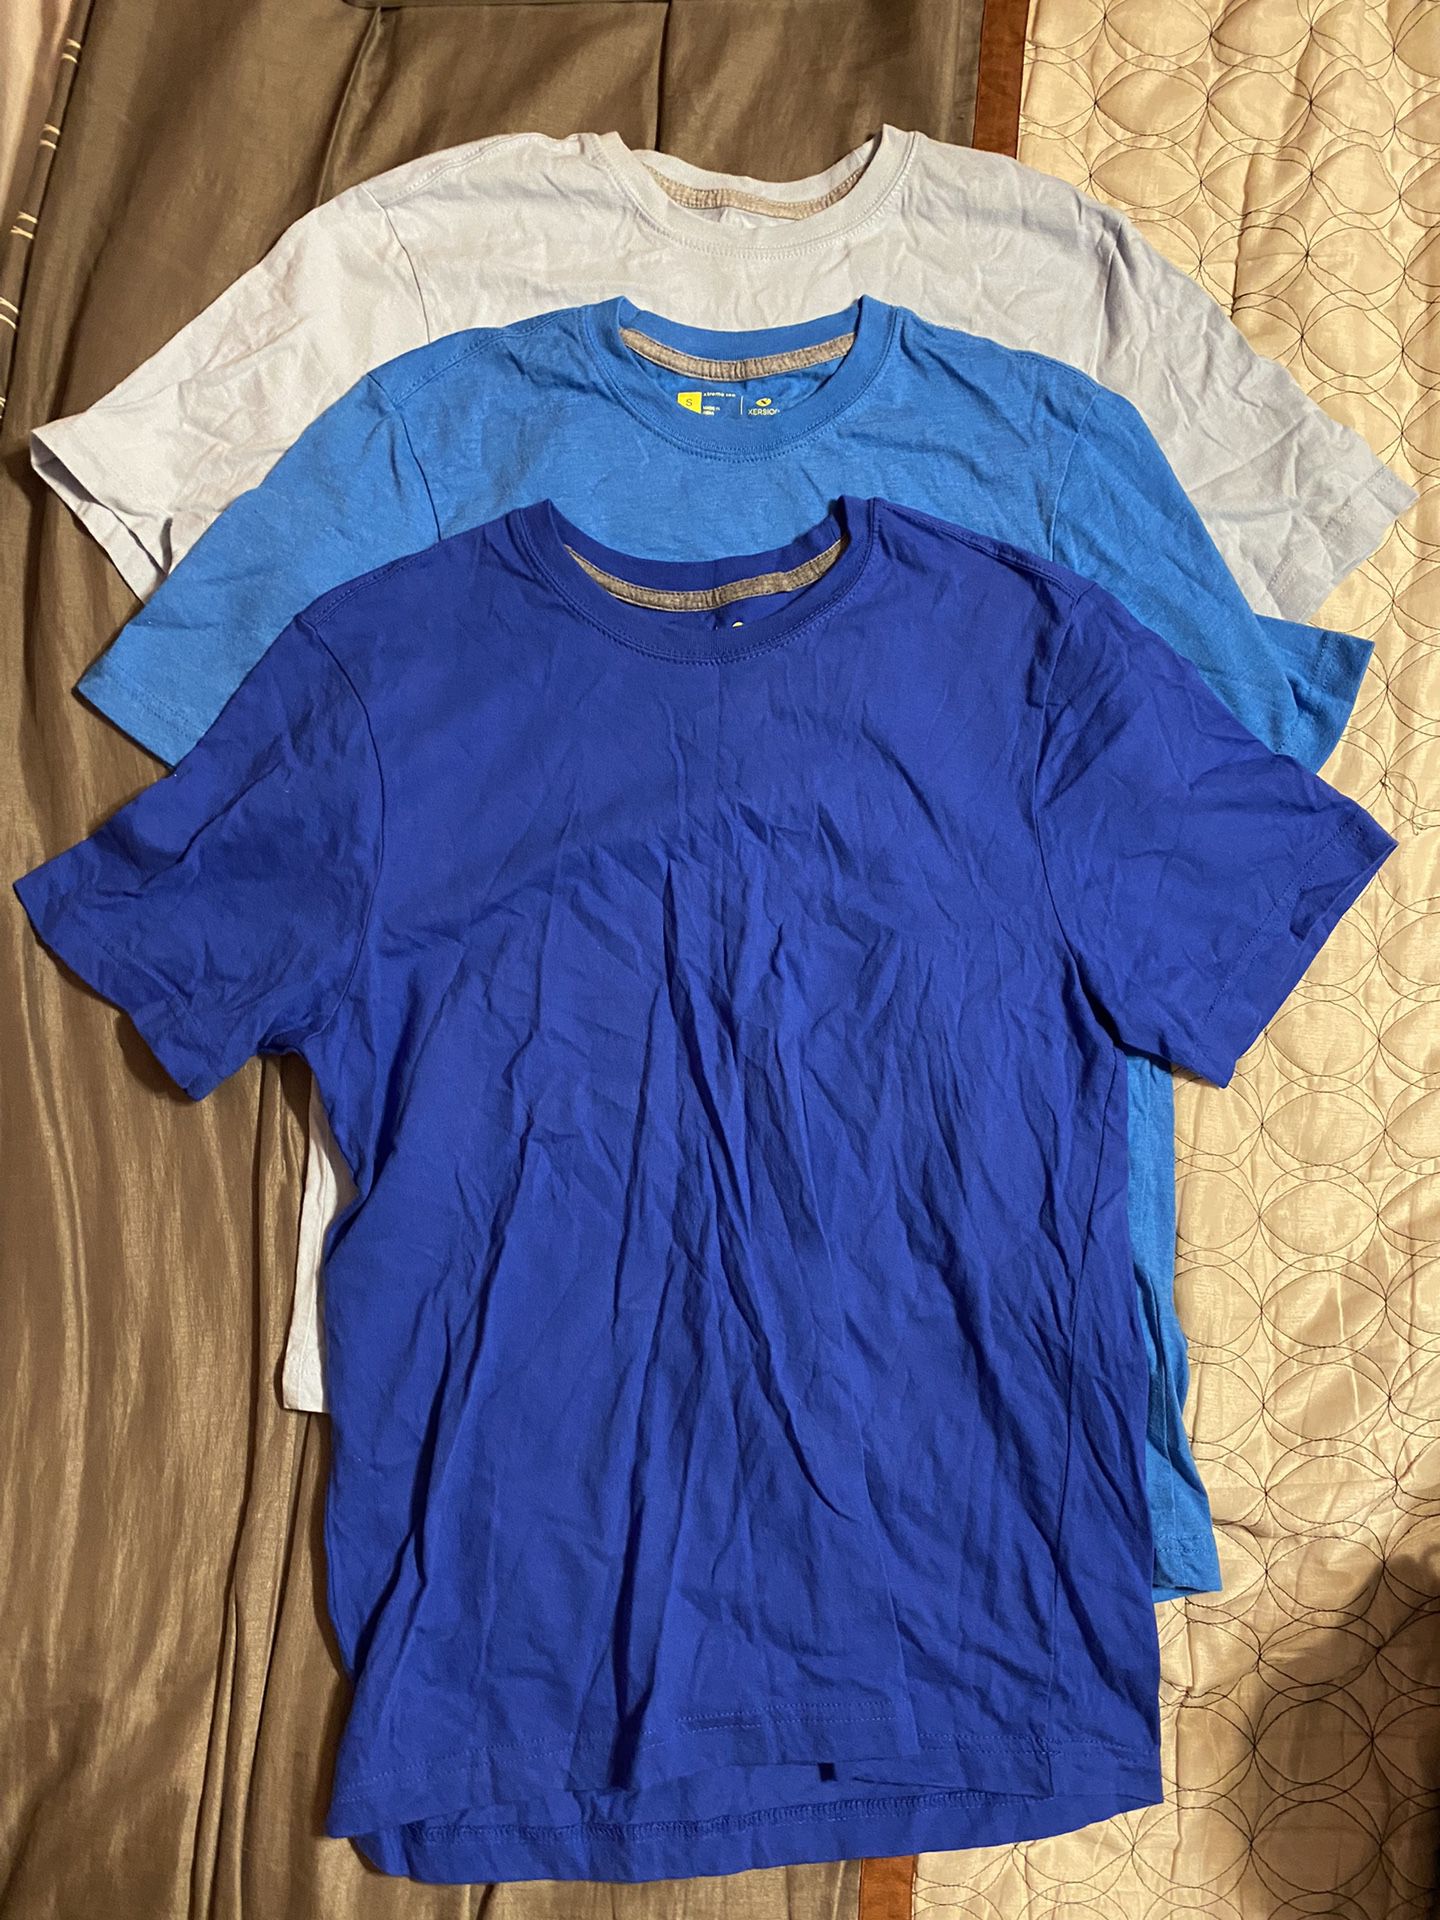 Men’s t-shirts (size S)